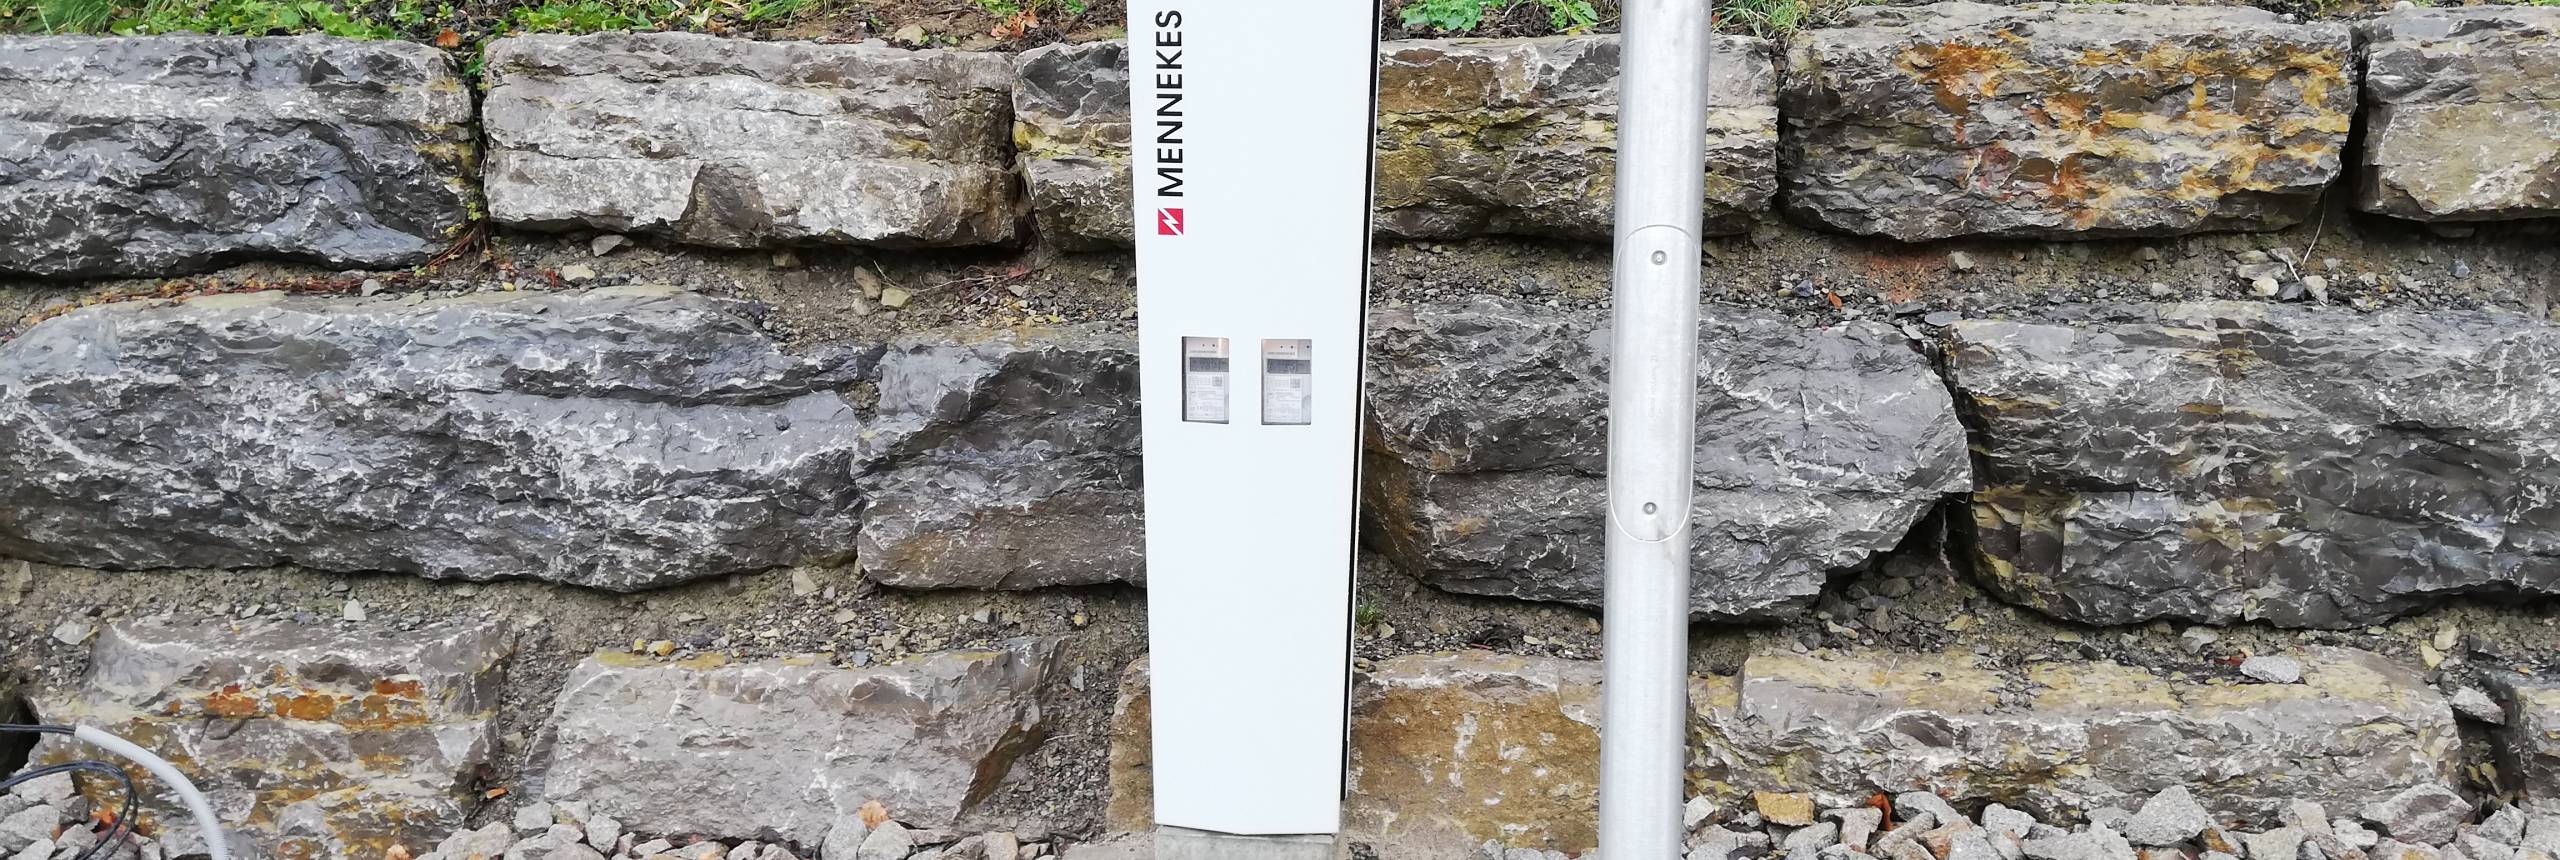 Hero E-charging station built